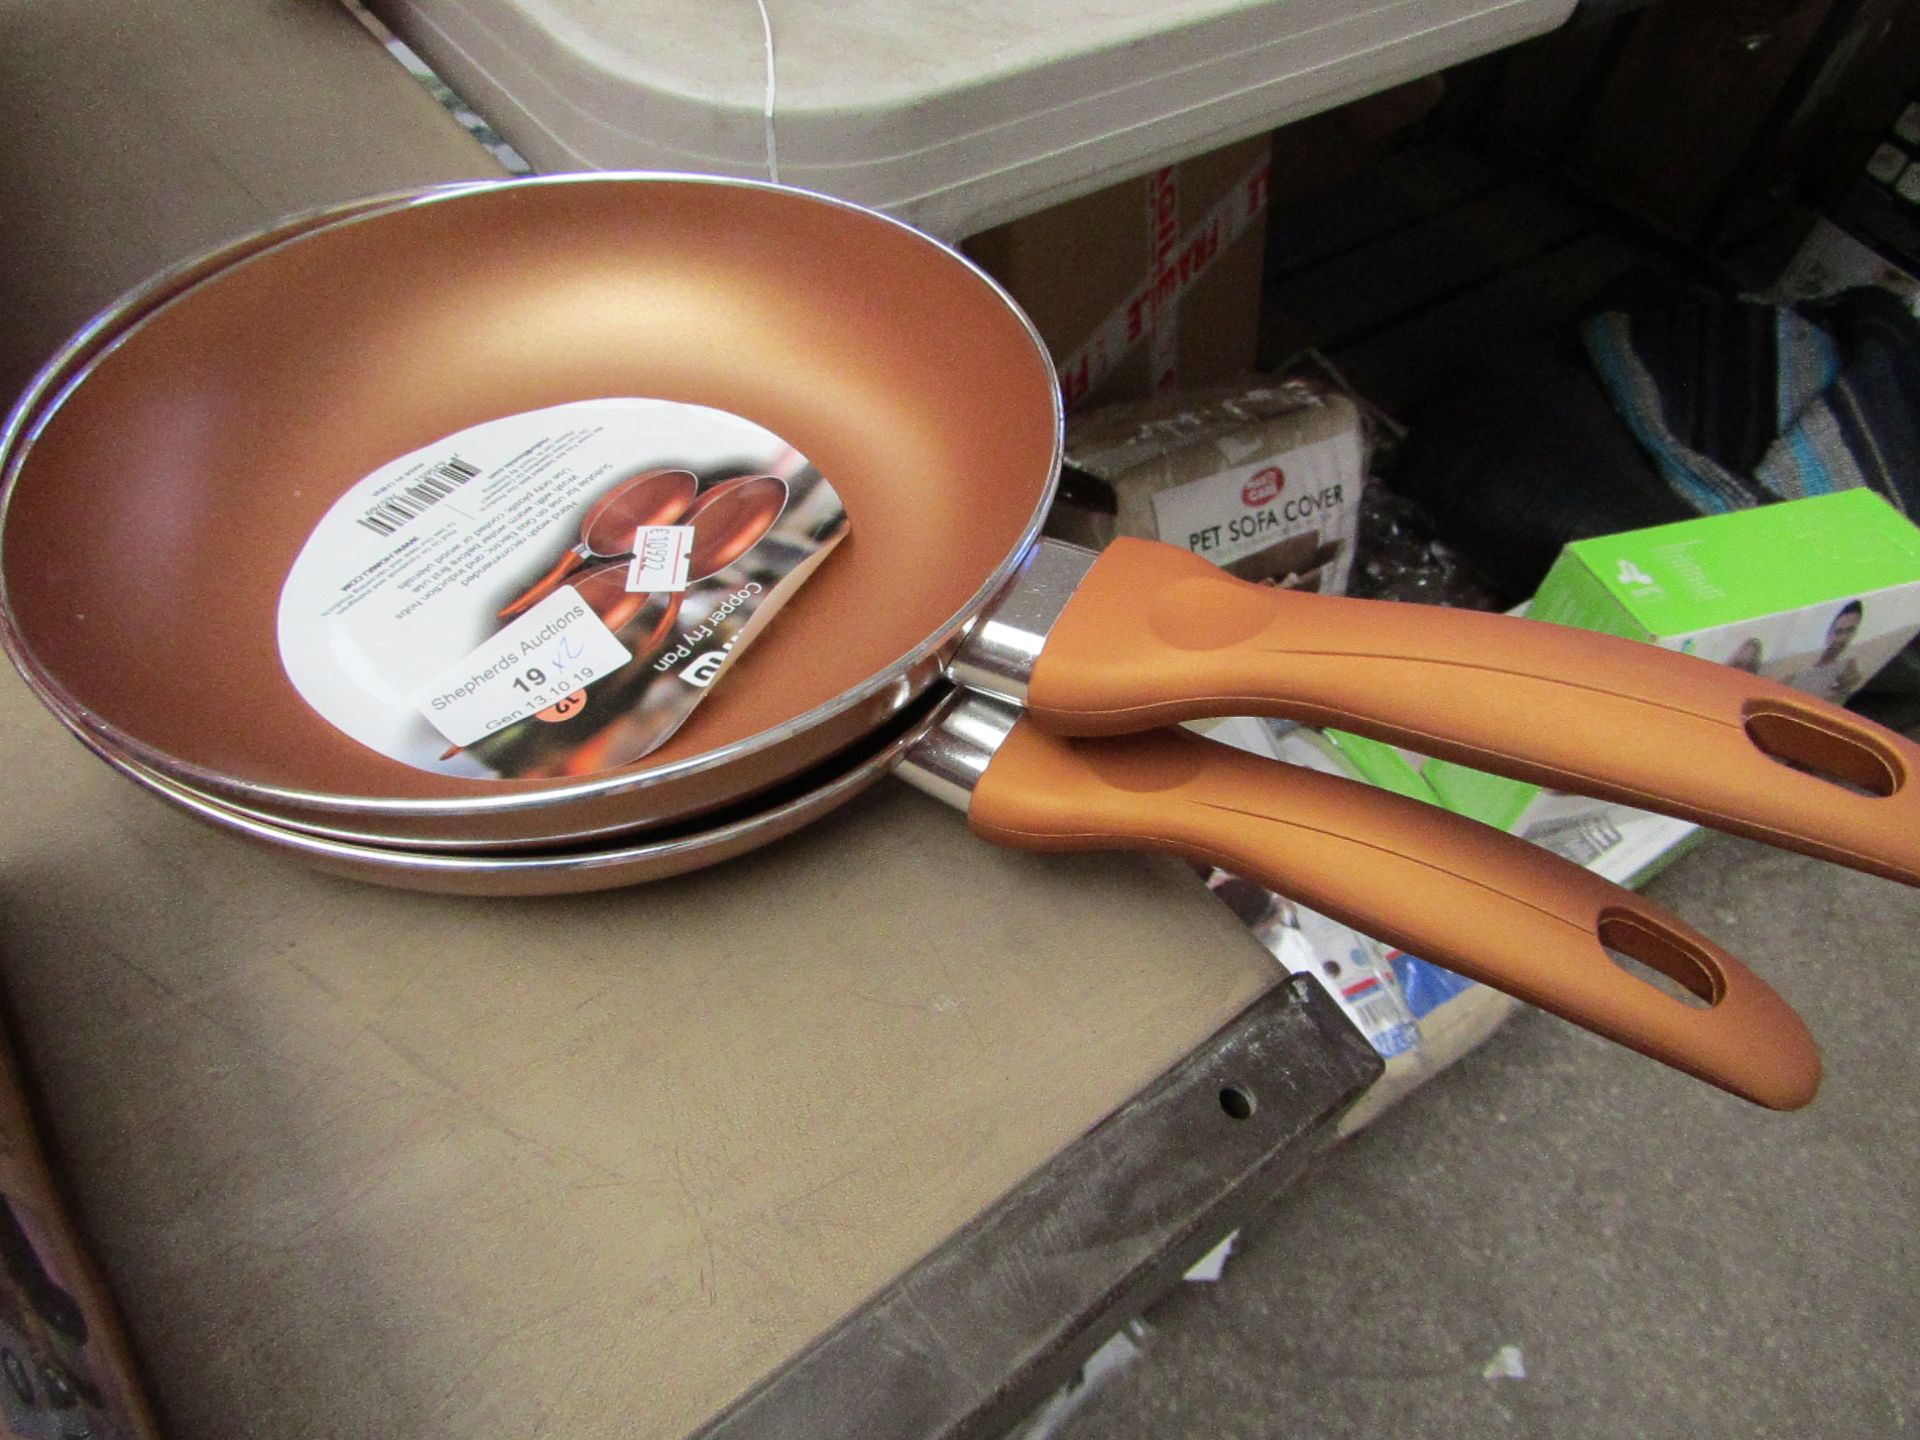 2x Copper fry pans, new.